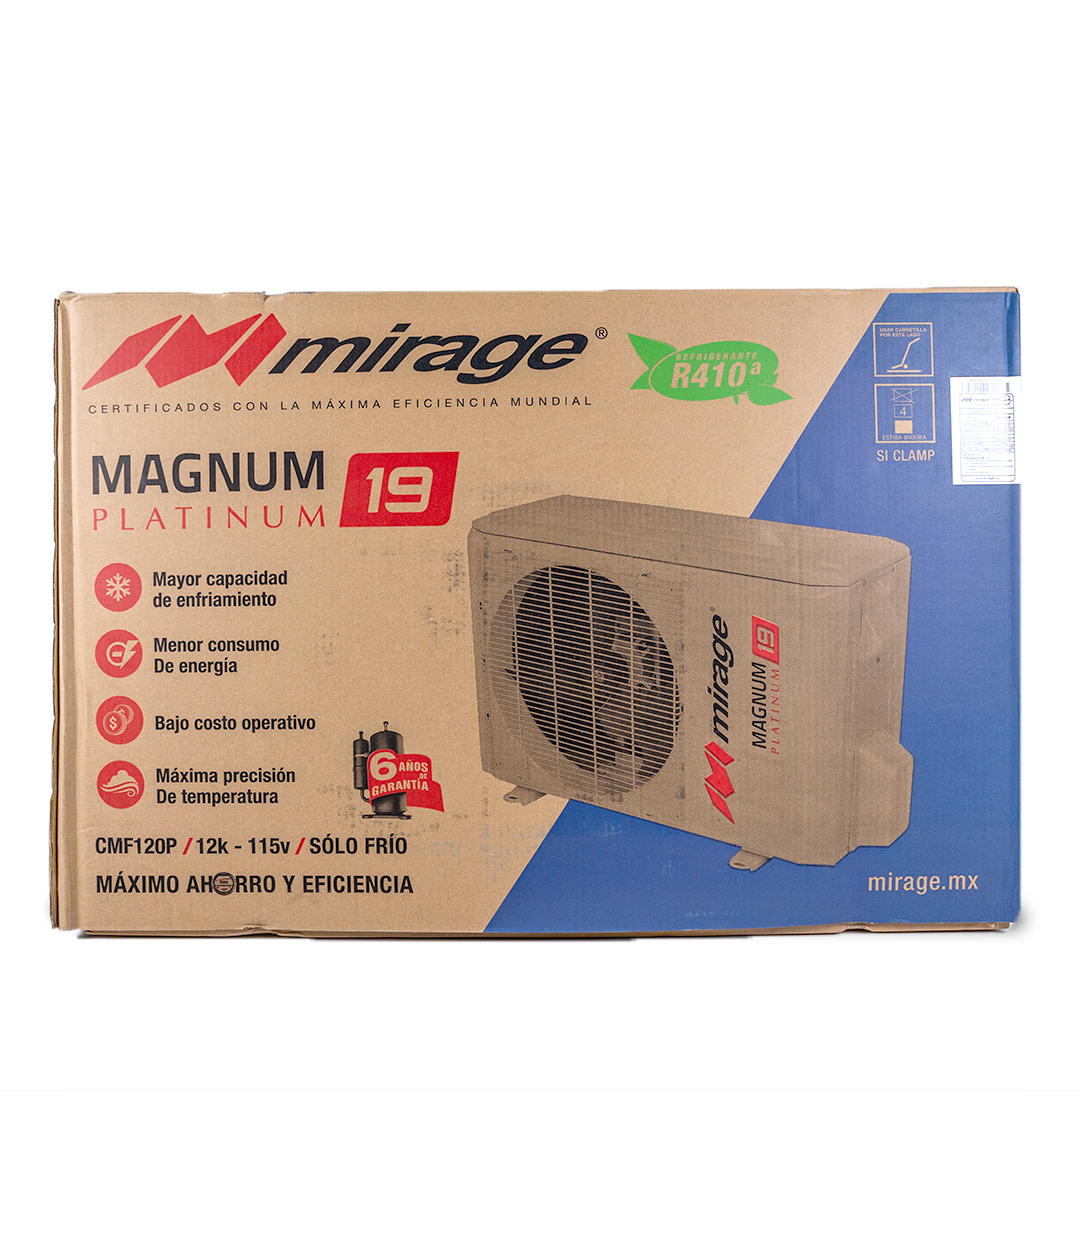 Magnum 19 Platinum Inverter CMF120P 110v 1 Tonelada